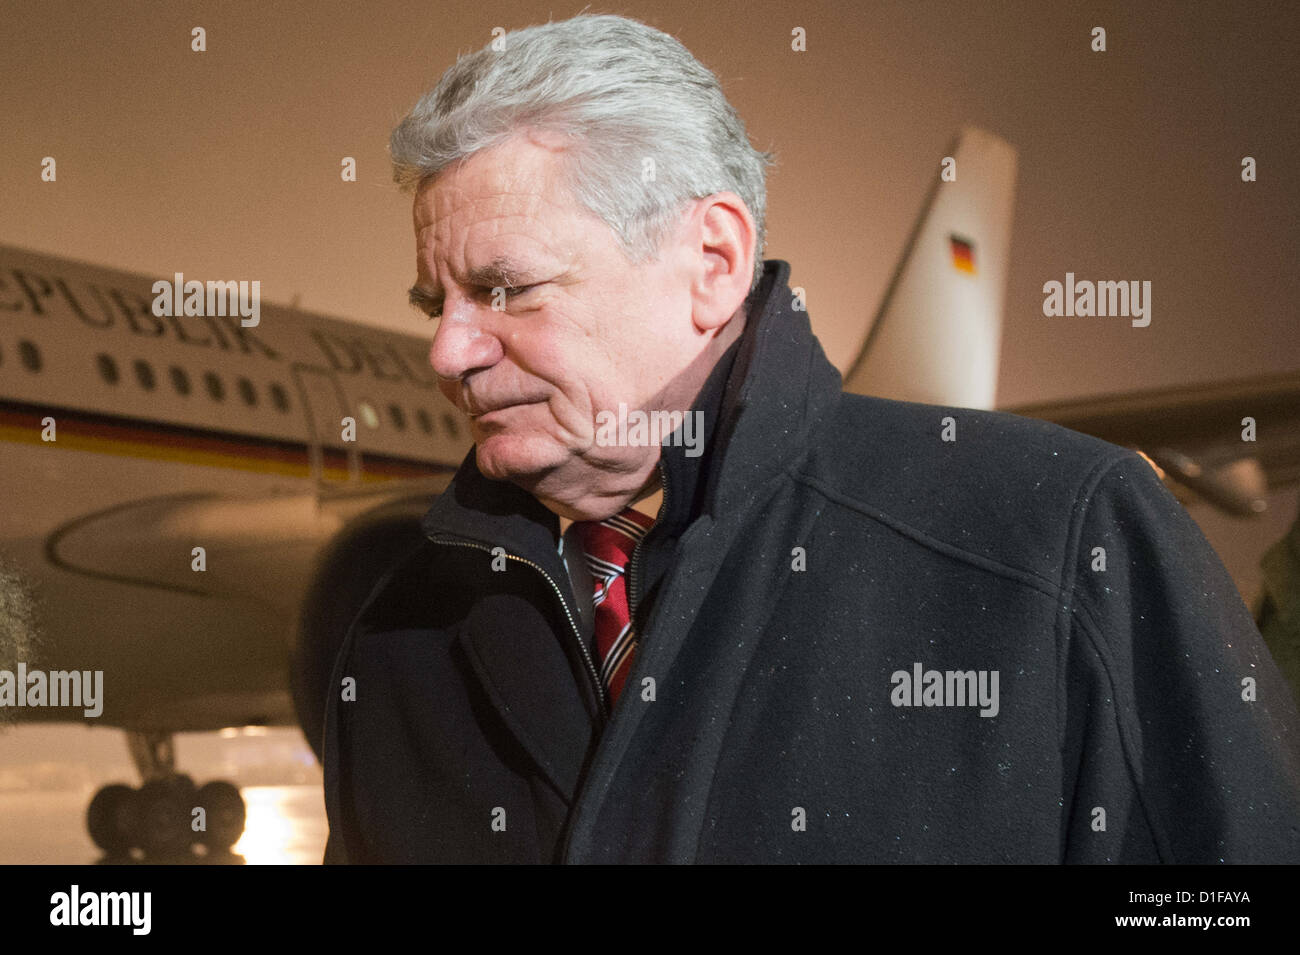 Deutscher Bundespräsident Gauck lässt das Flugzeug im Camp Marmal in Mazar-i-Sharif, Afghanistan, 17. Dezember 2012. Gauck besucht die Soldaten der Bundeswehr, die über die Feiertage in Afghanistan eingesetzt sind. Foto: MAURIZIO GAMBARINI Stockfoto